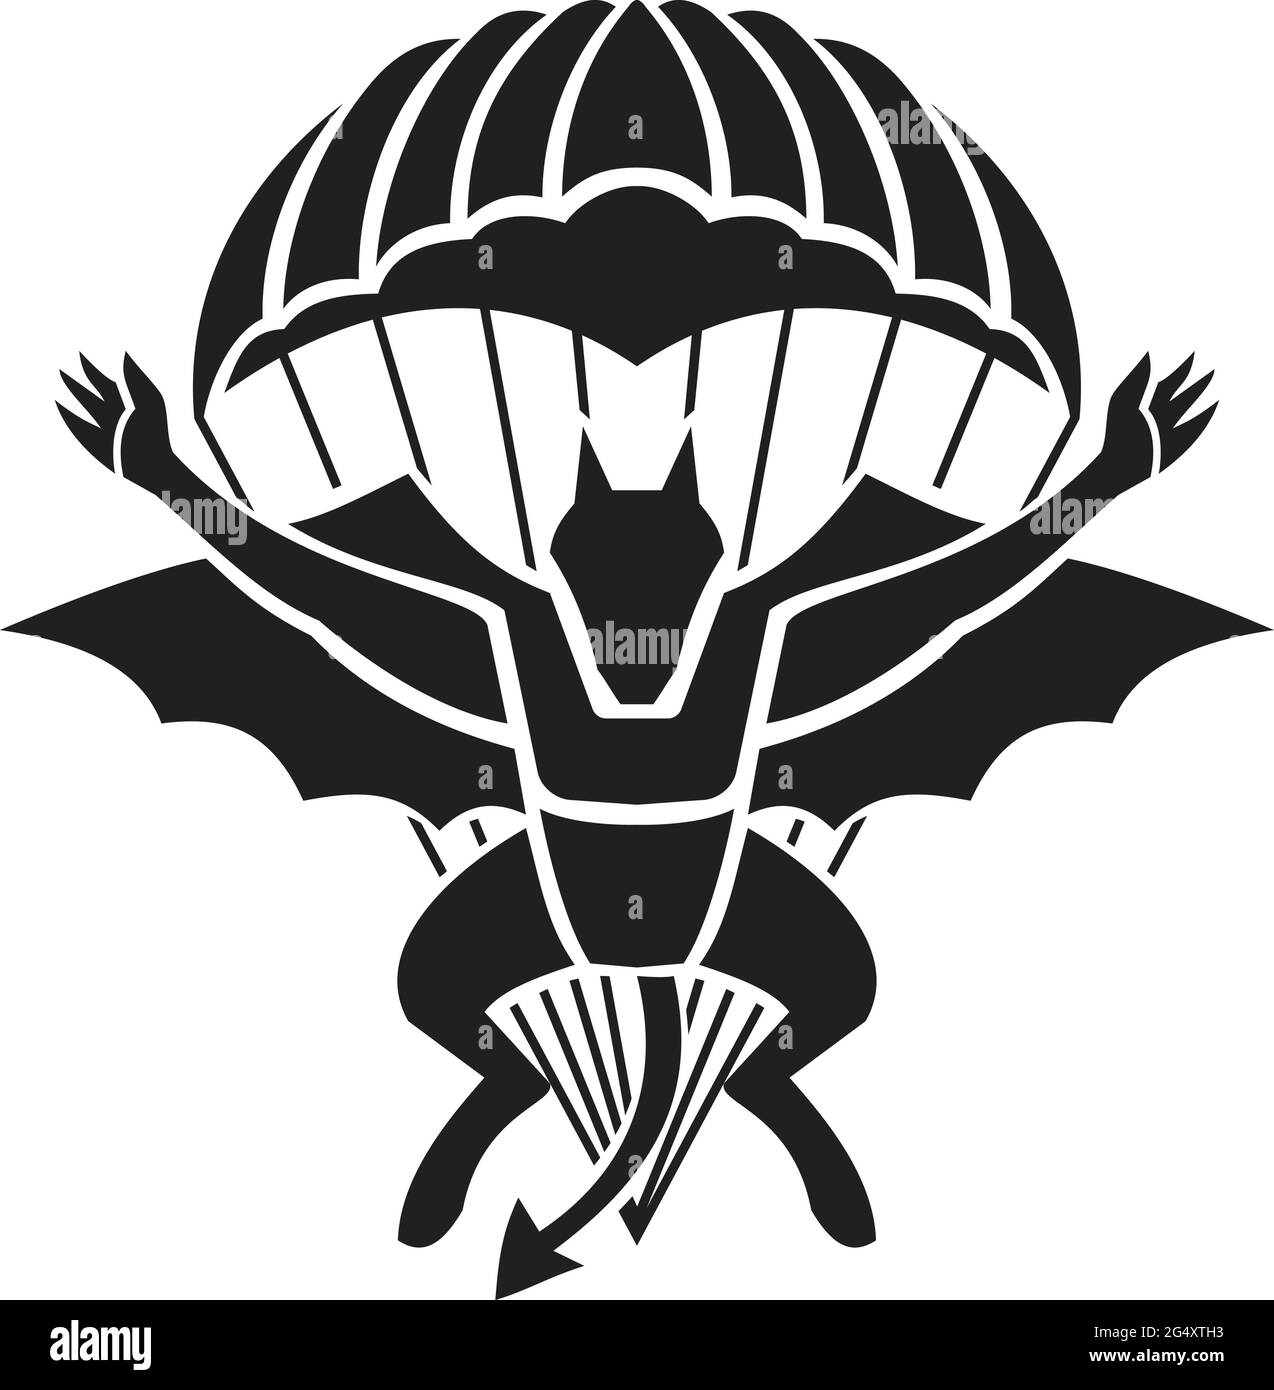 Militärabzeichen Illustration des Fallschirmsprungs-Regiments des Roten Teufels mit einem Dämon, einem Teufel oder einer Fledermaus mit Fallschirm-Sprung von vorne auf Isolate Stock Vektor